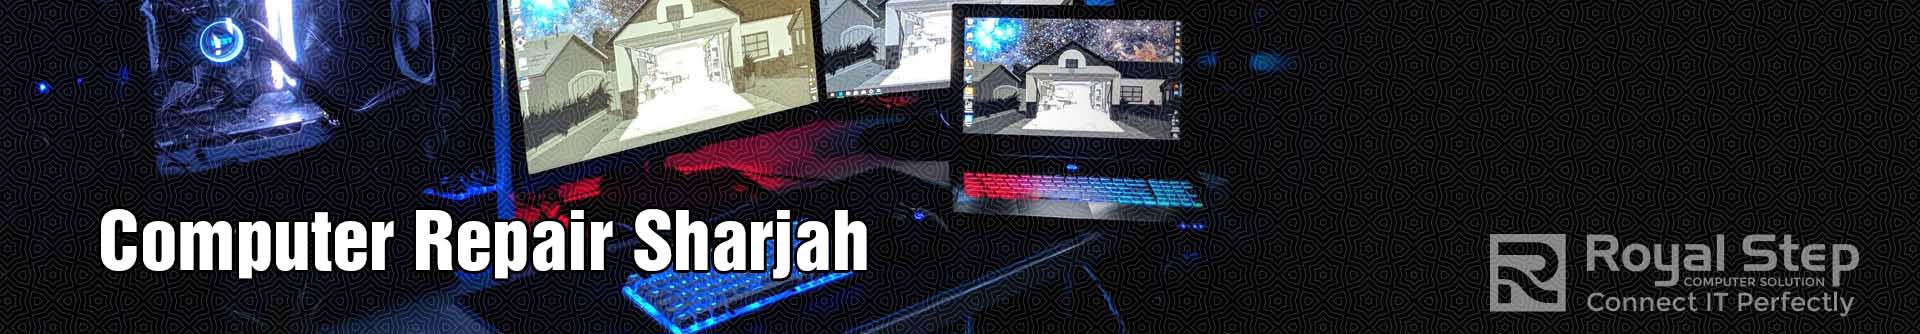 Computer Repair Sharjah